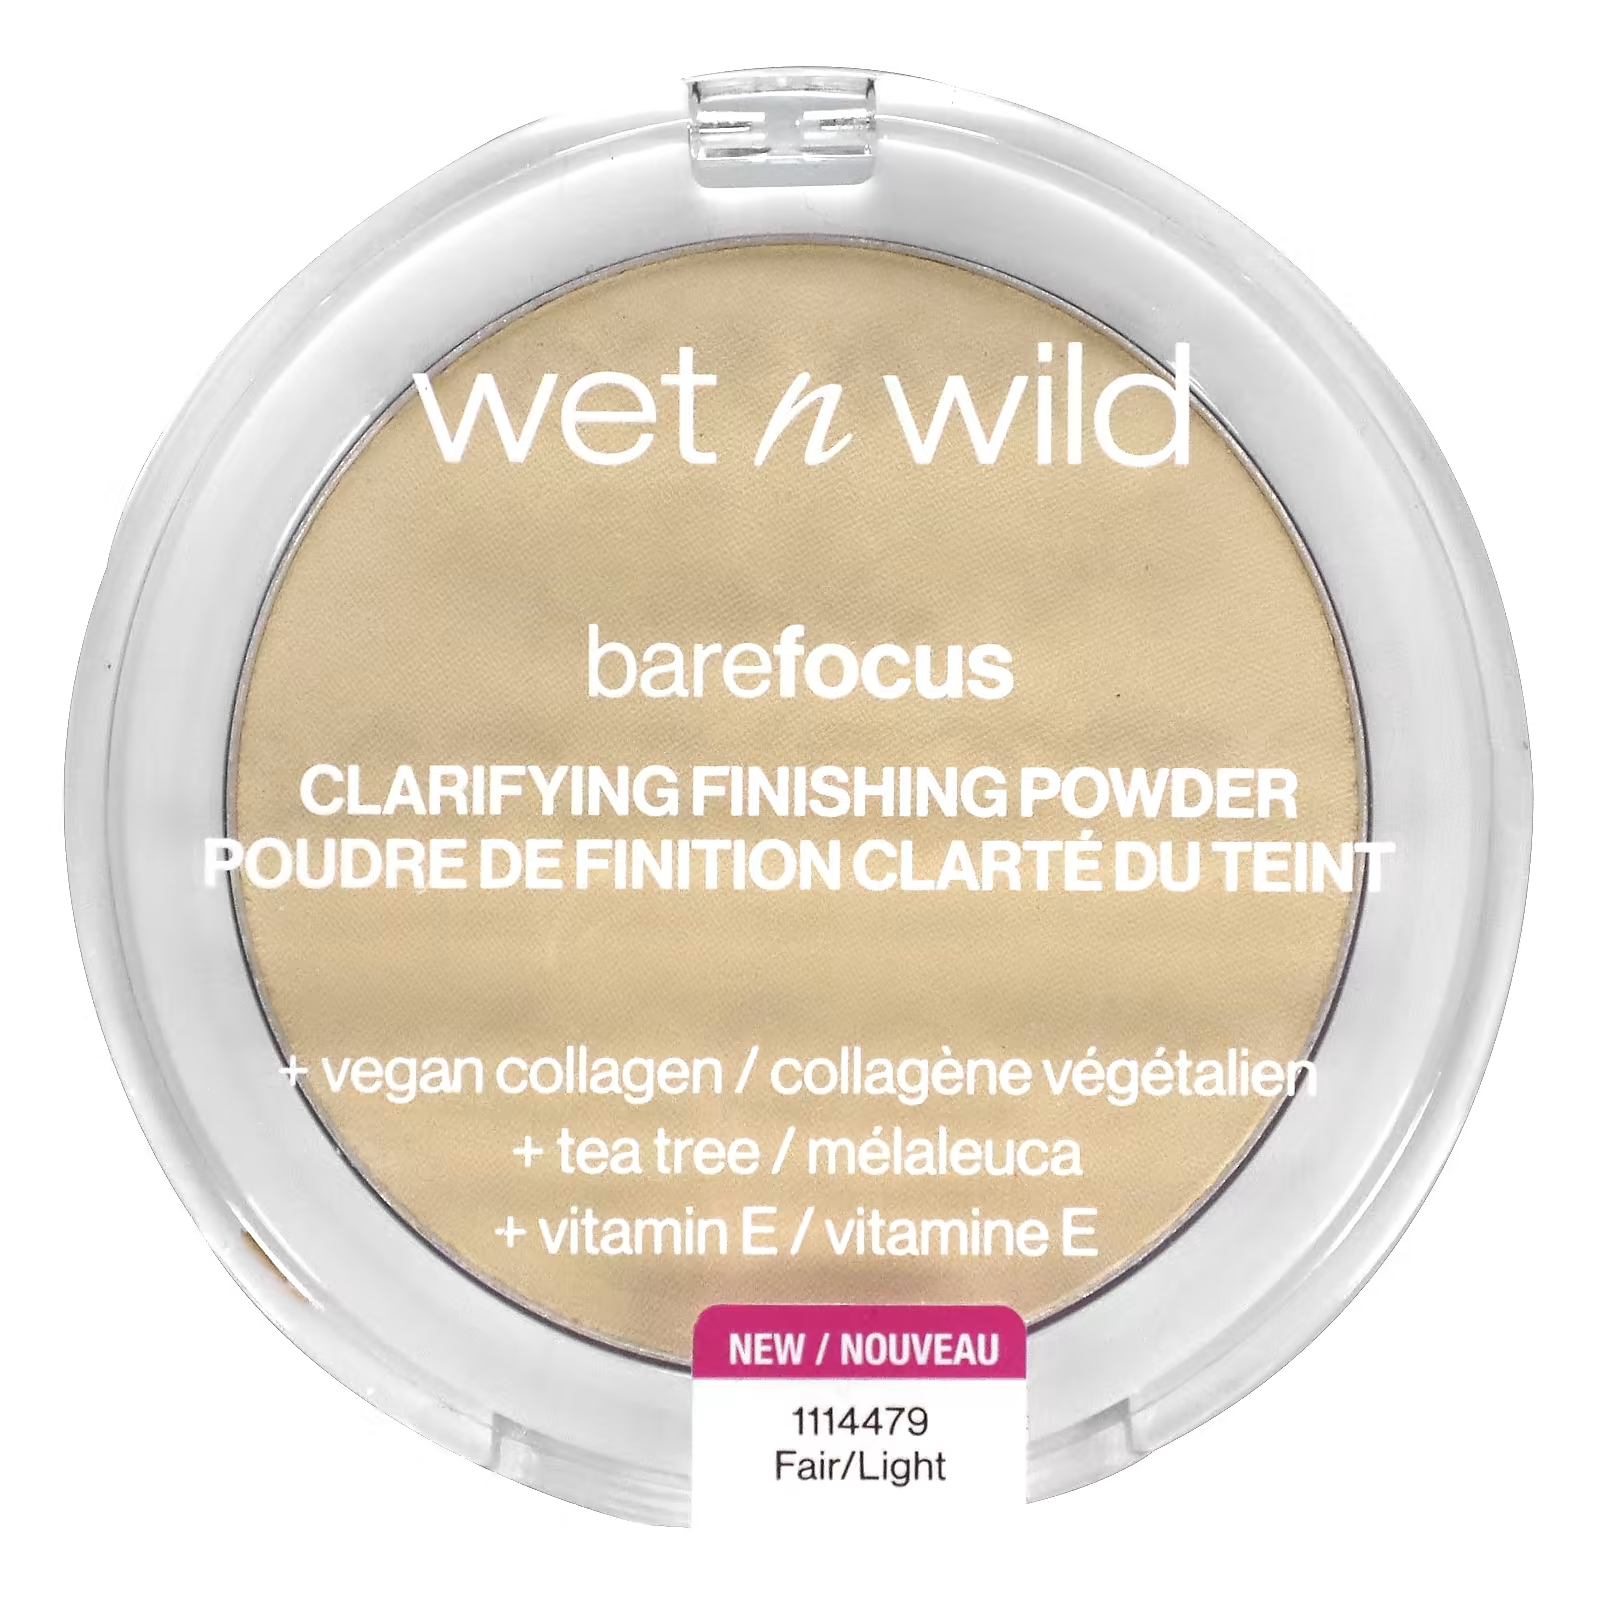 Пудра для лица Wet n Wild Barefocus Clarifying Finishing Powder Fair/Light